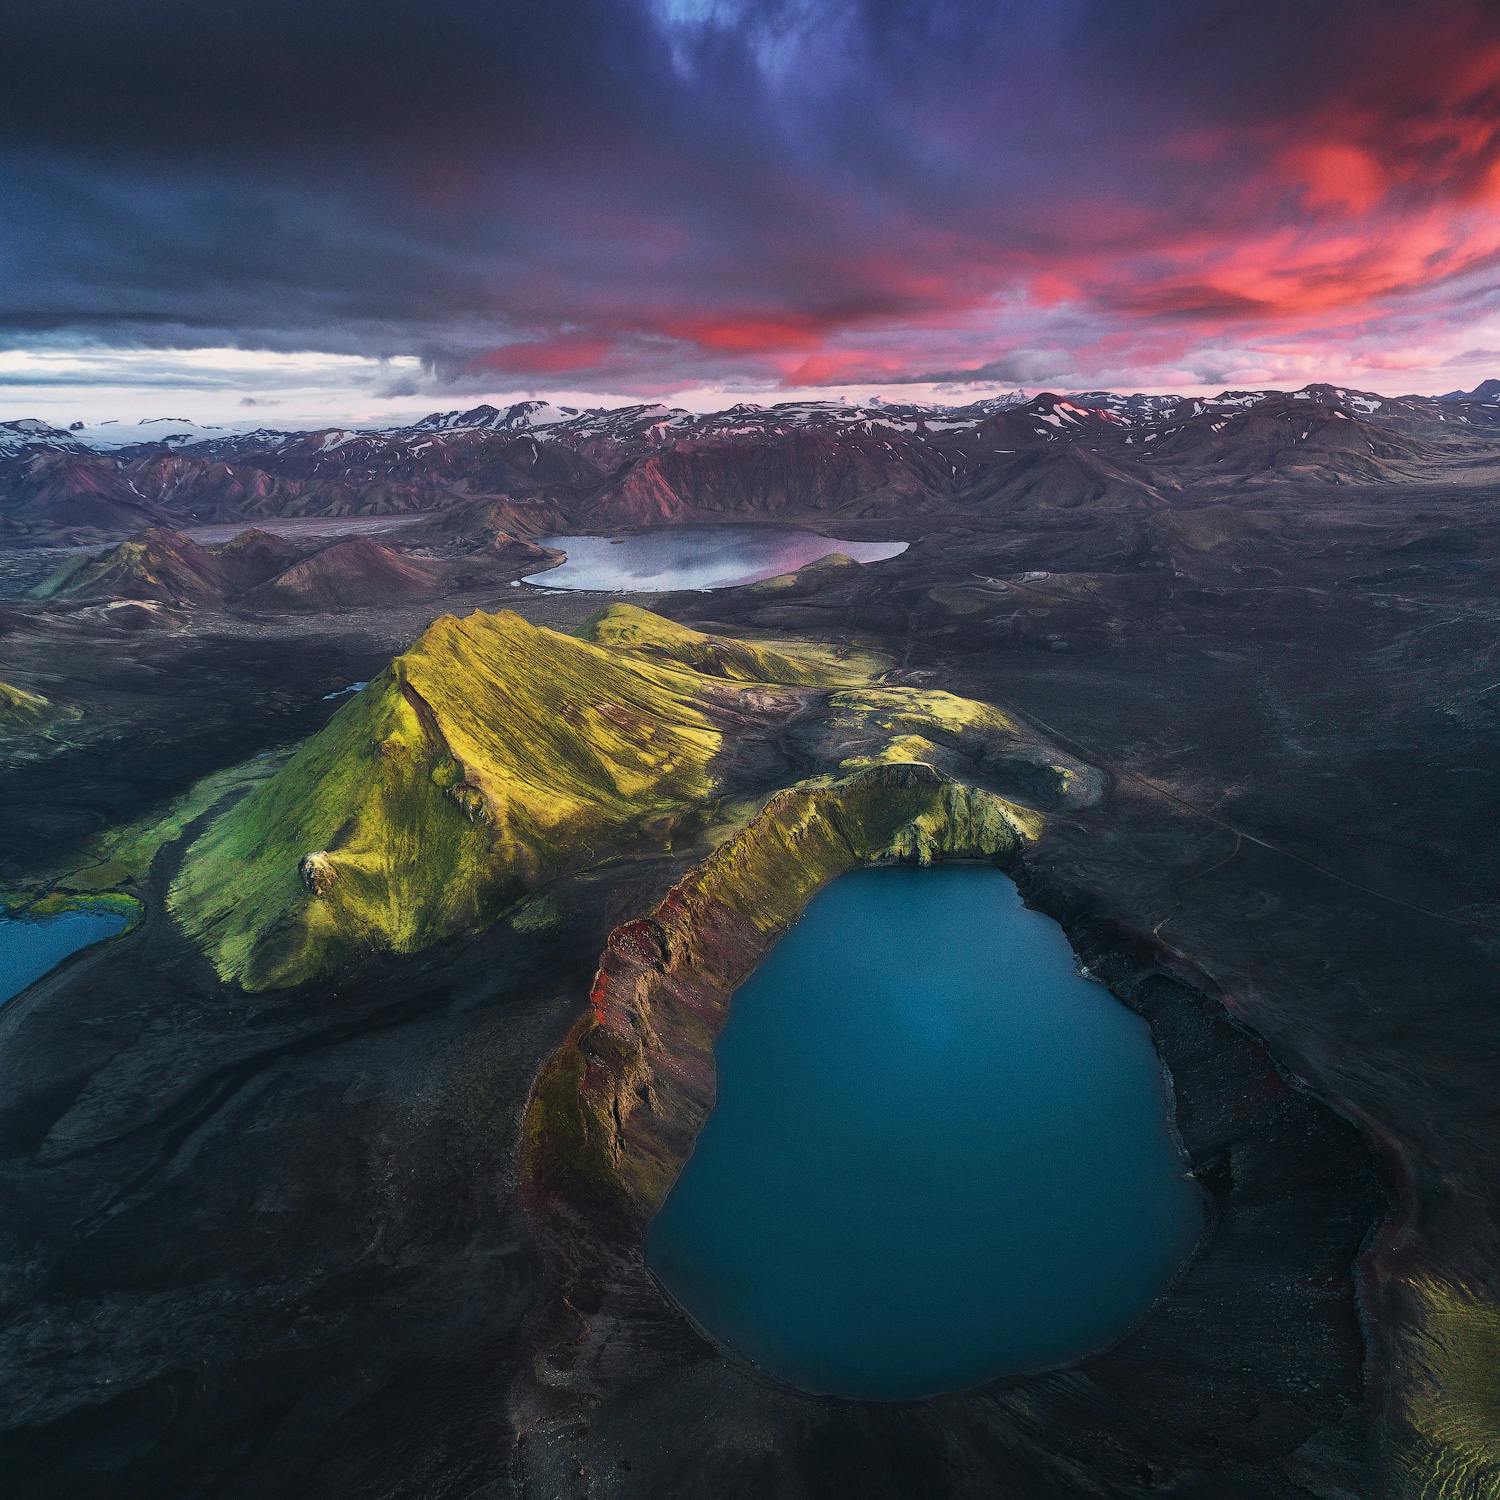 Le cratère Bláhylur abrite un lac d'un bleu éclatant et sa couleur vivante est capturée au coucher du soleil.